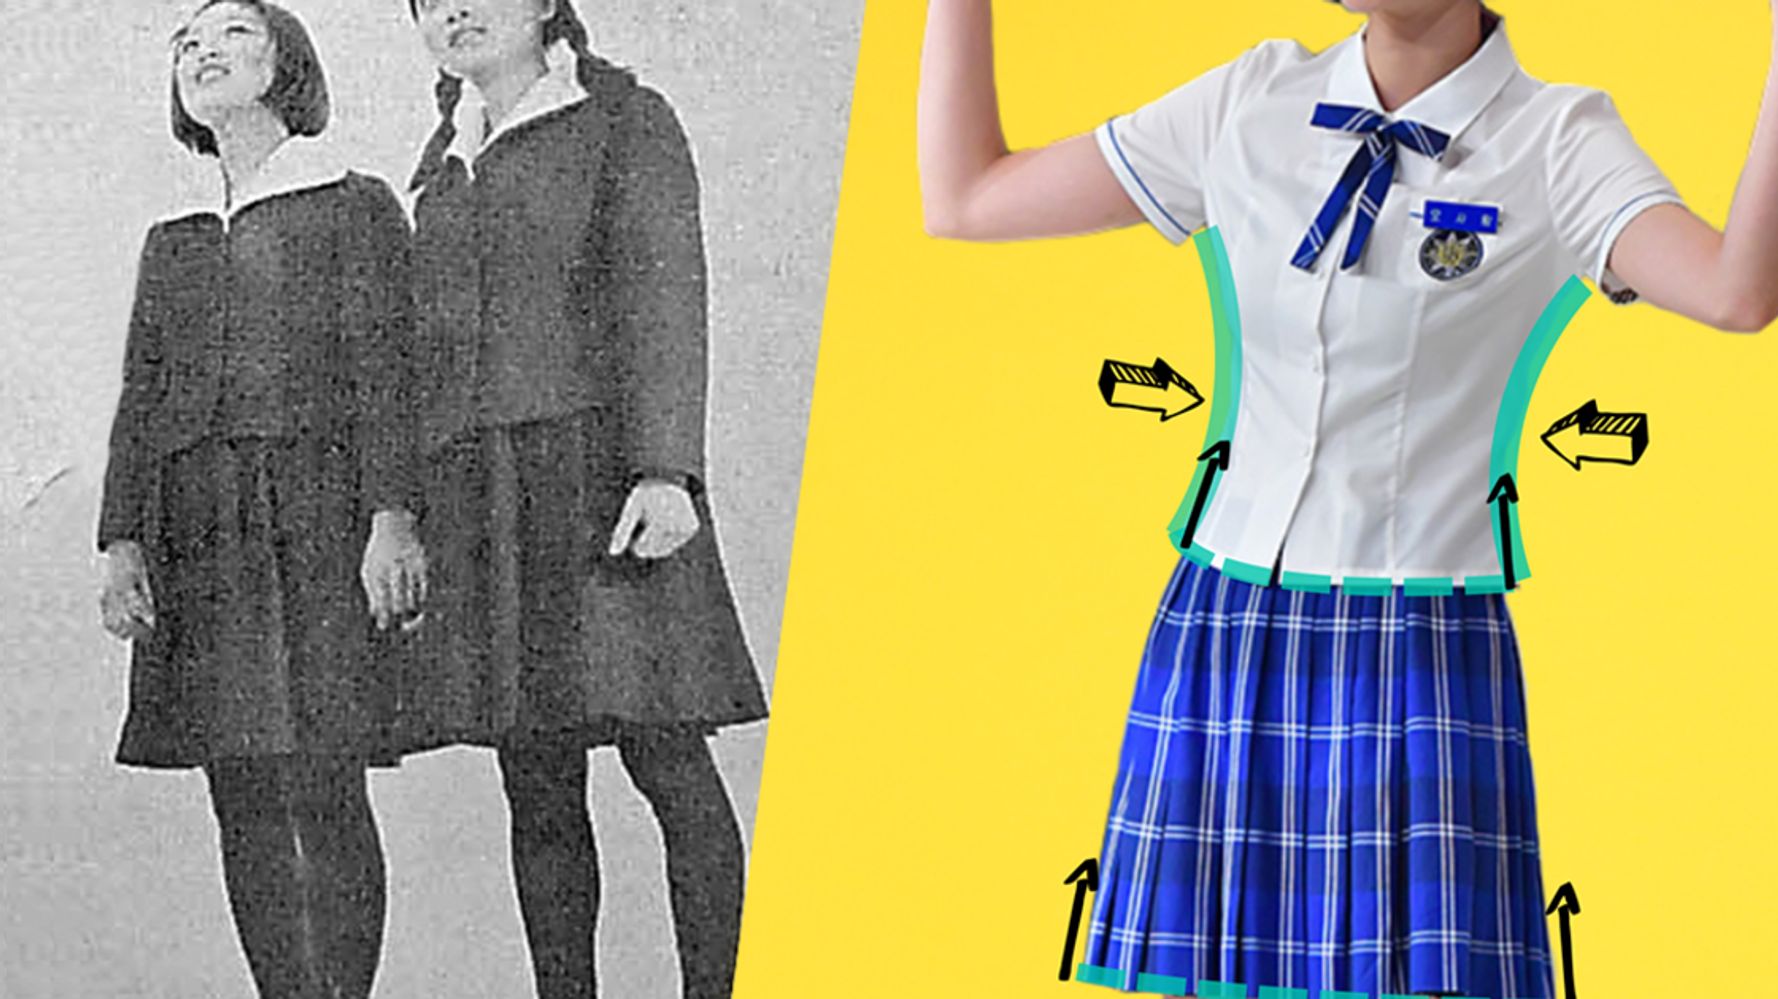 女子生徒の制服が 体にぴったりすぎる 韓国で不満の声が続出 ハフポスト World